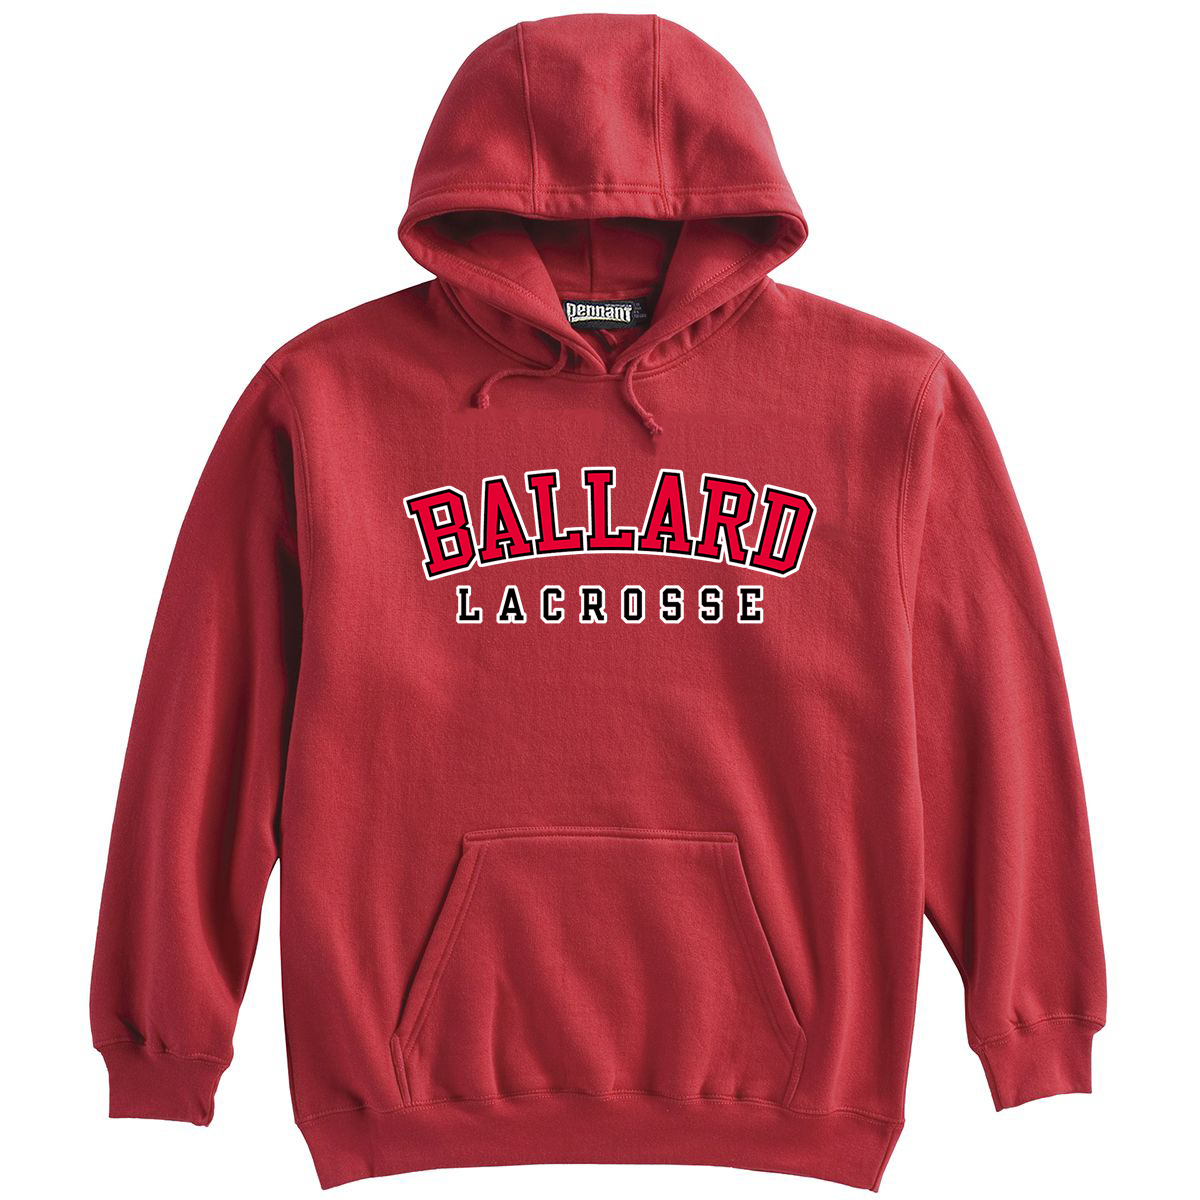 Ballard High School Boys Lacrosse Sweatshirt